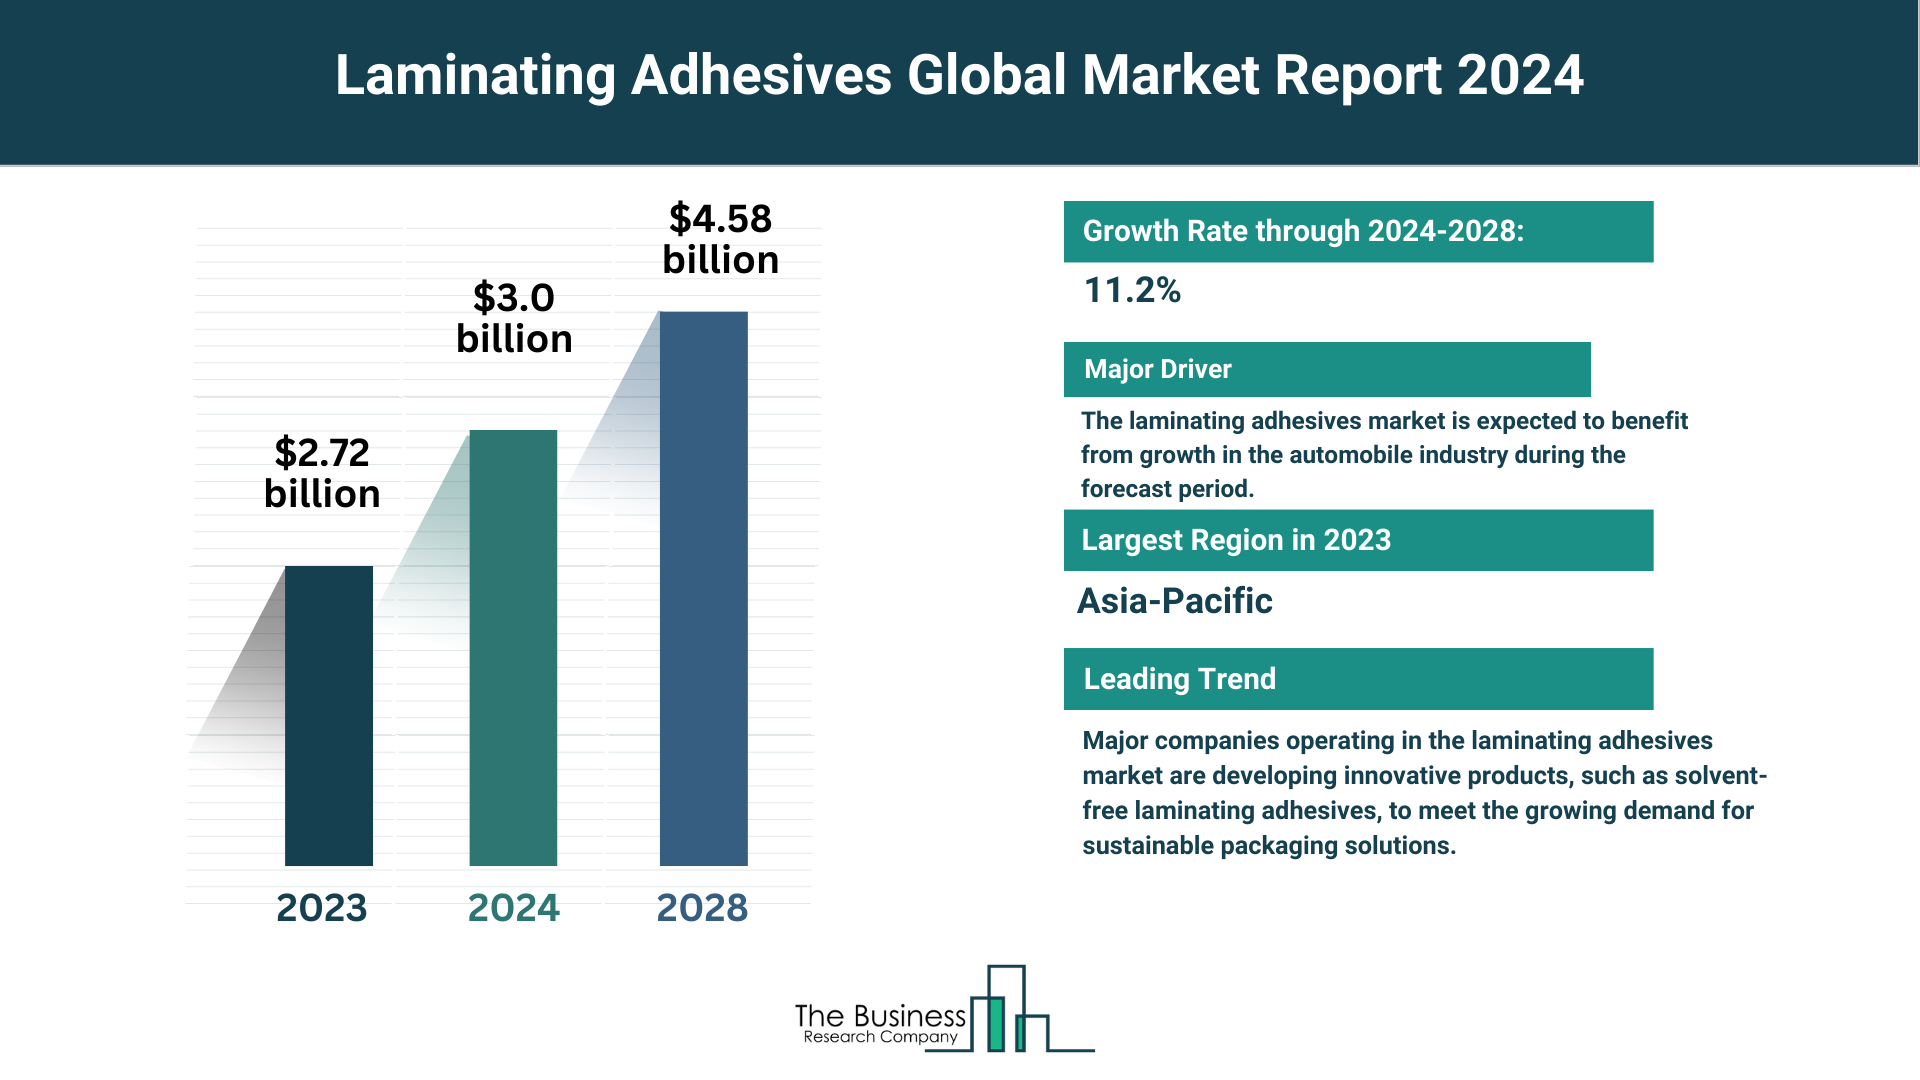 Global Laminating Adhesives Market